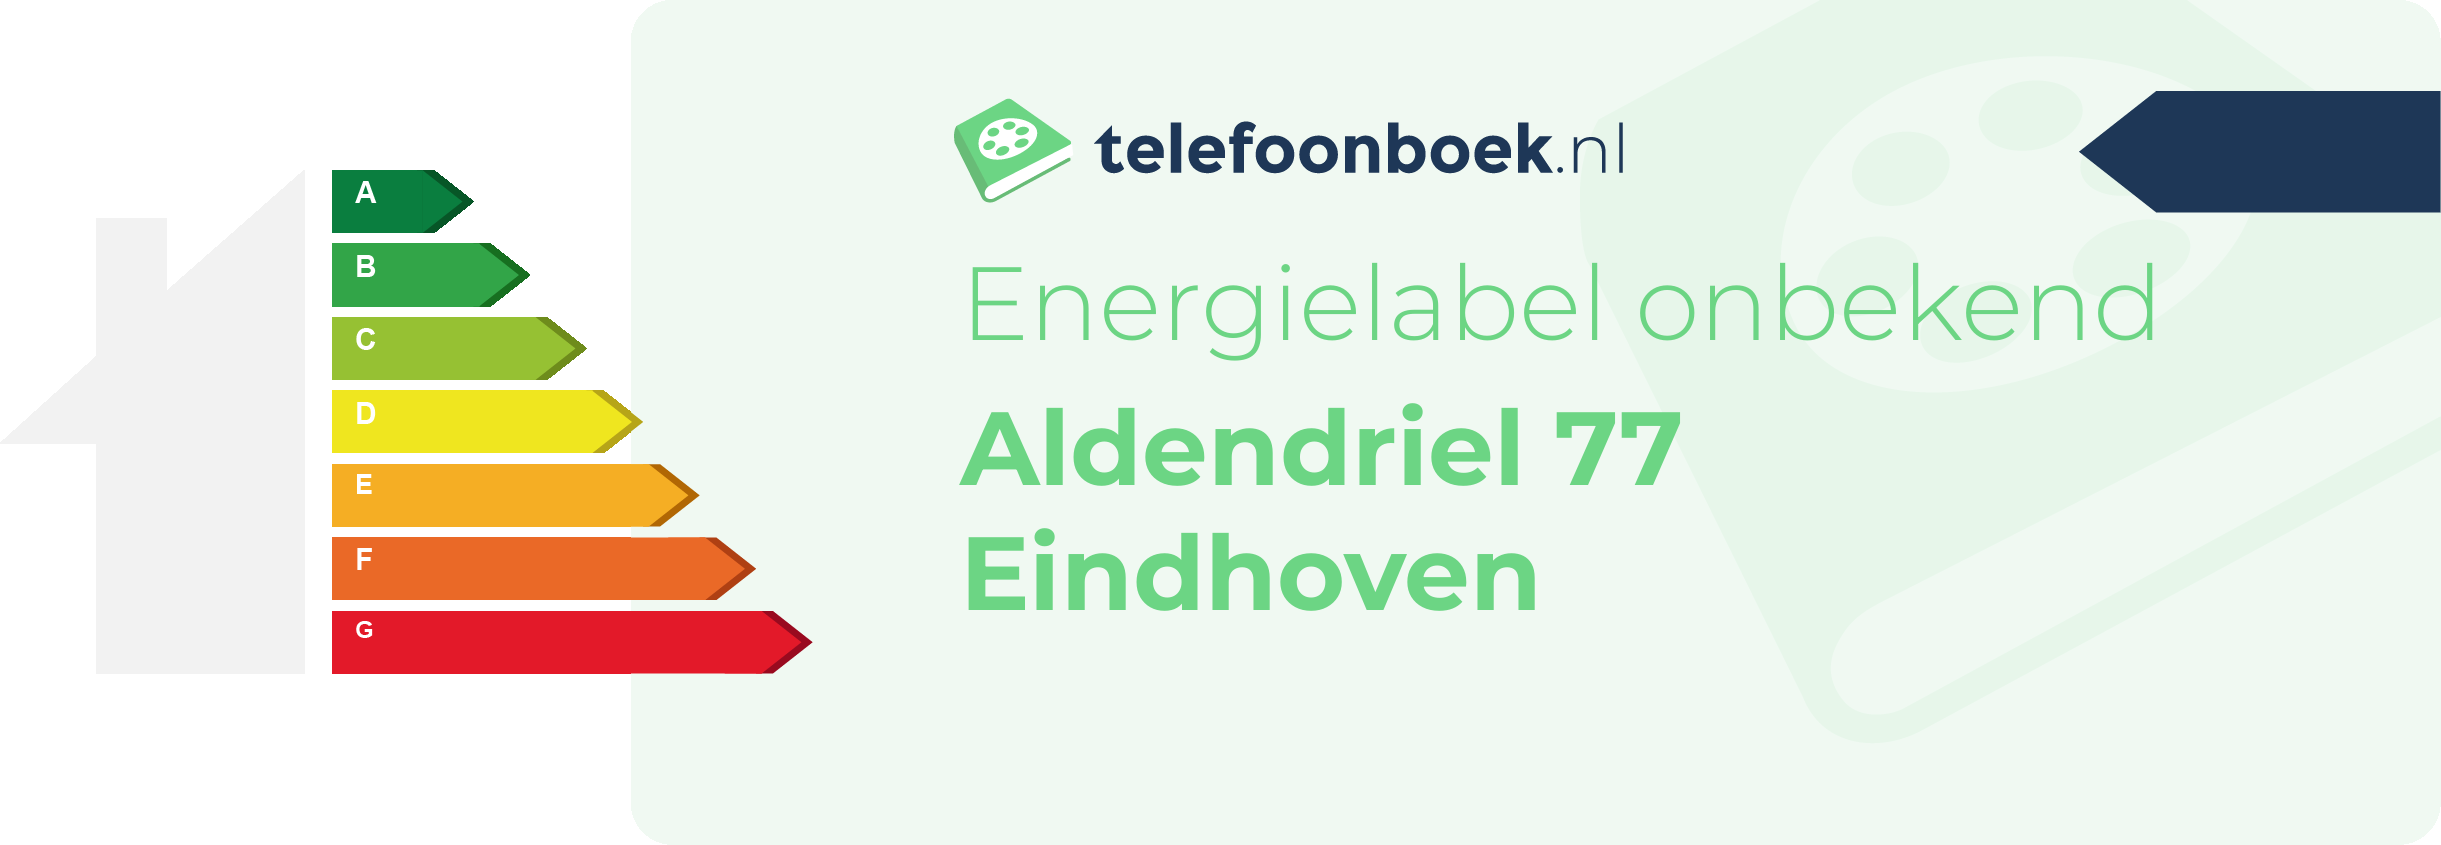 Energielabel Aldendriel 77 Eindhoven